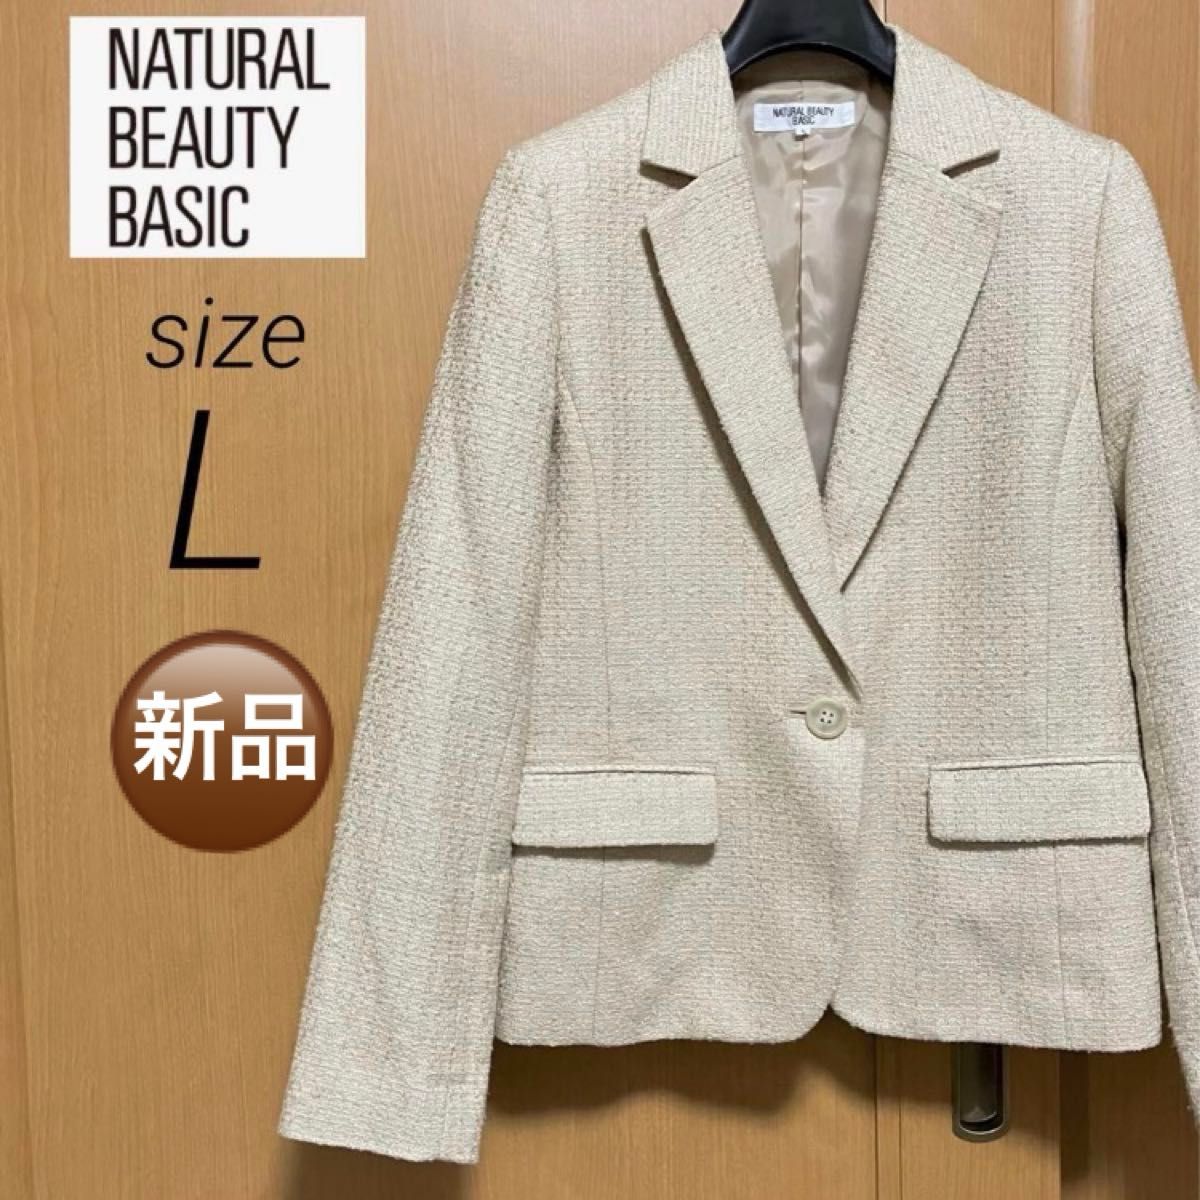 新品 未使用 テーラード ジャケット ツイード スーツ レディース L 入学式 入園式 アウター 上着 長袖